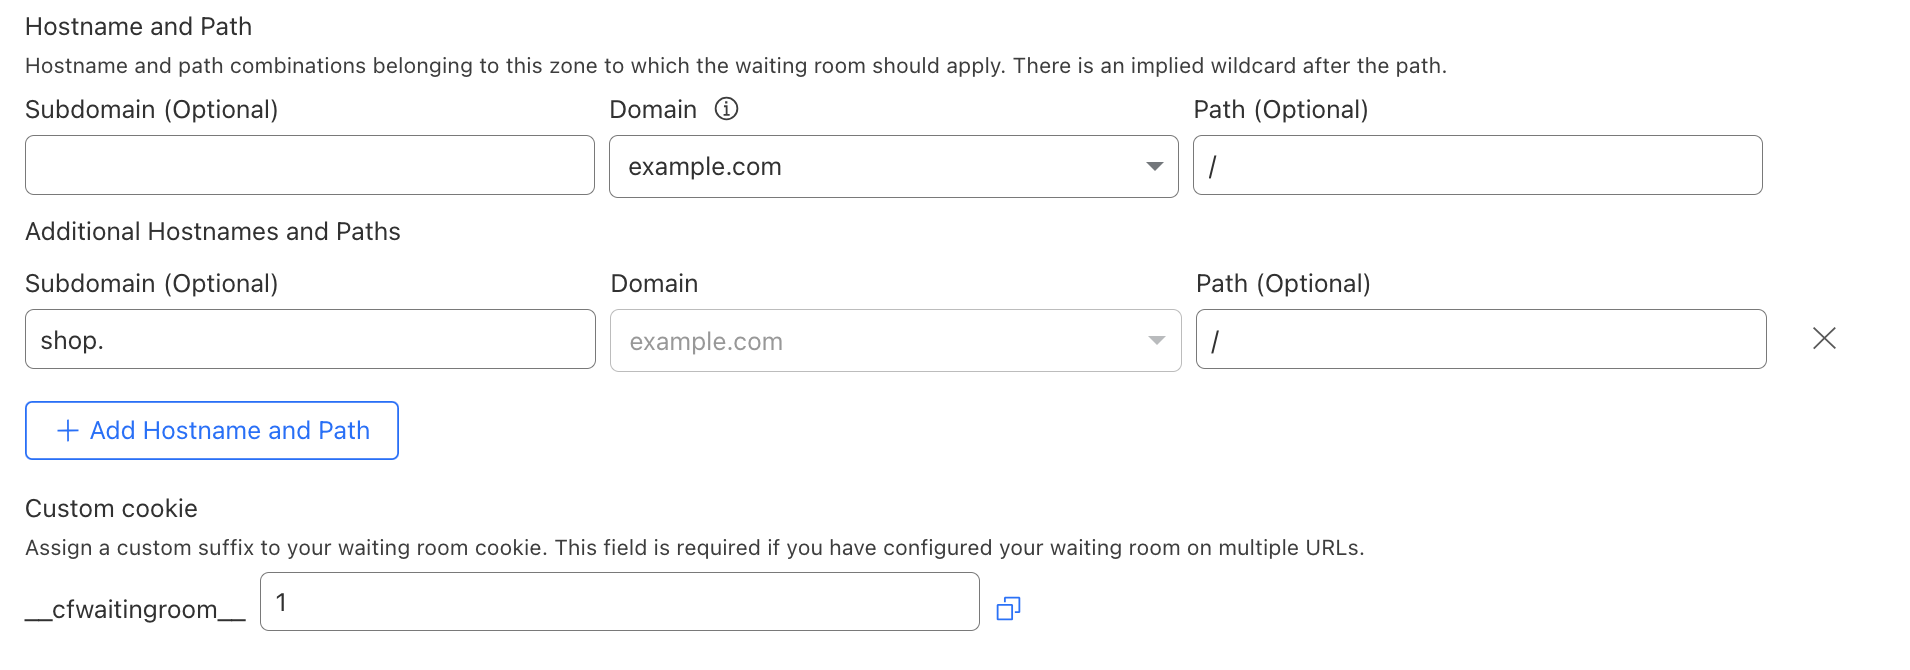 Añade varias combinaciones de nombres de host y rutas de acceso a tu sala de espera seleccionando Add Hostname and Path (Añadir nombre de host y ruta de acceso).